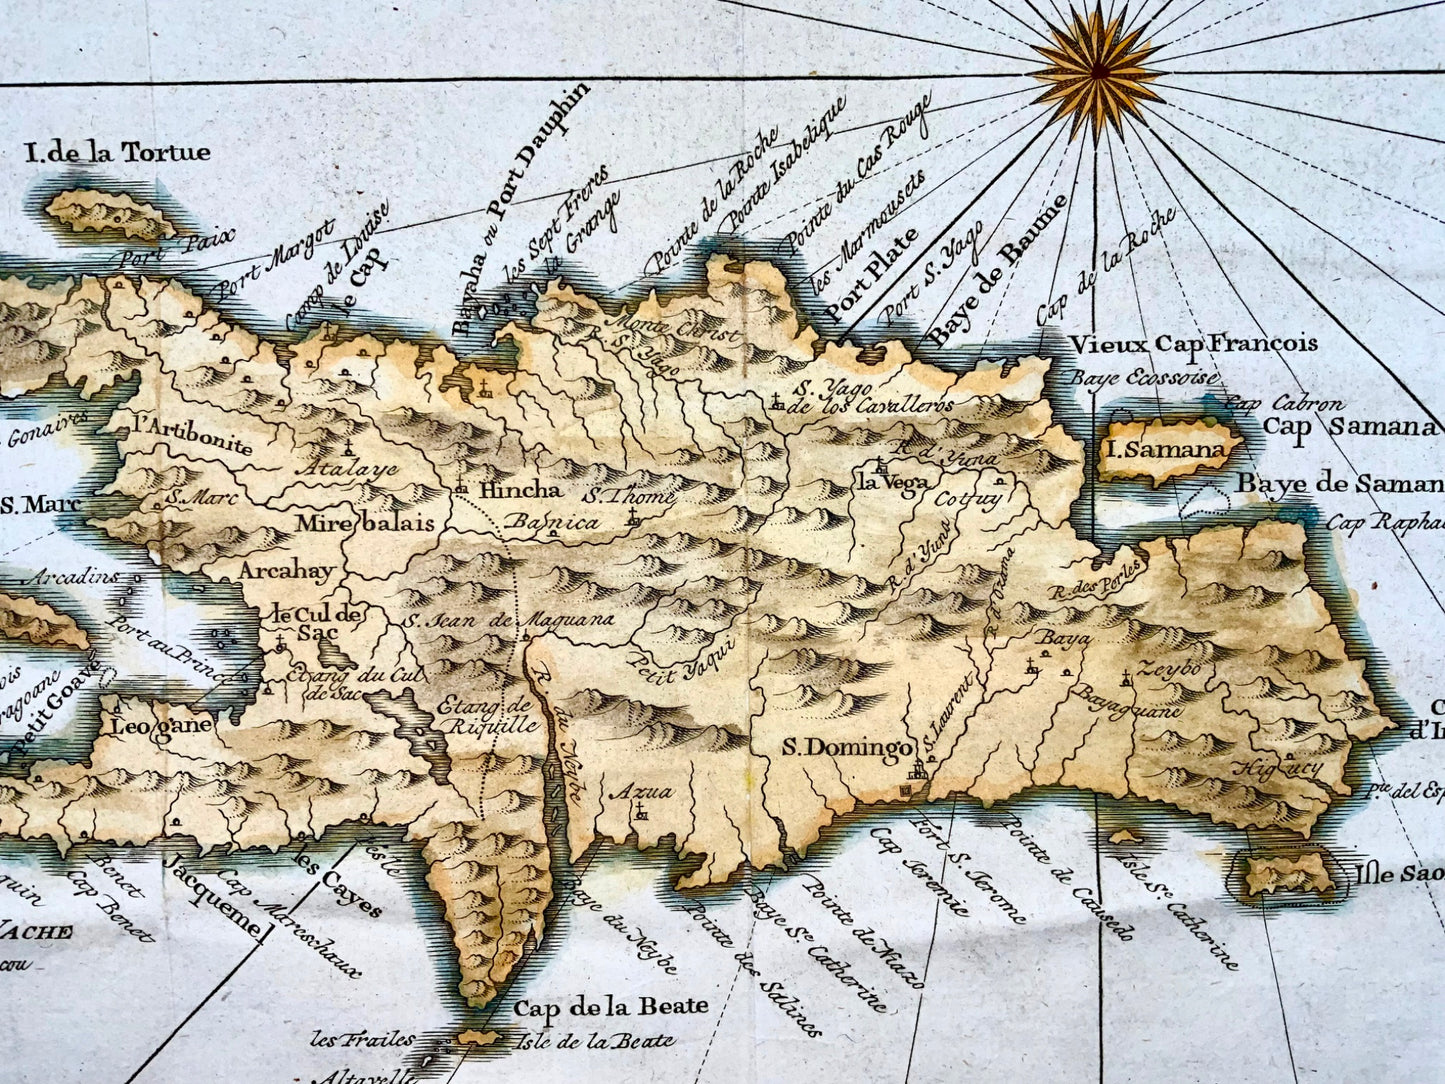 1775 A. van Krevelt; Carte de l' Isle de Saint Domingue, Hispaniola - Map